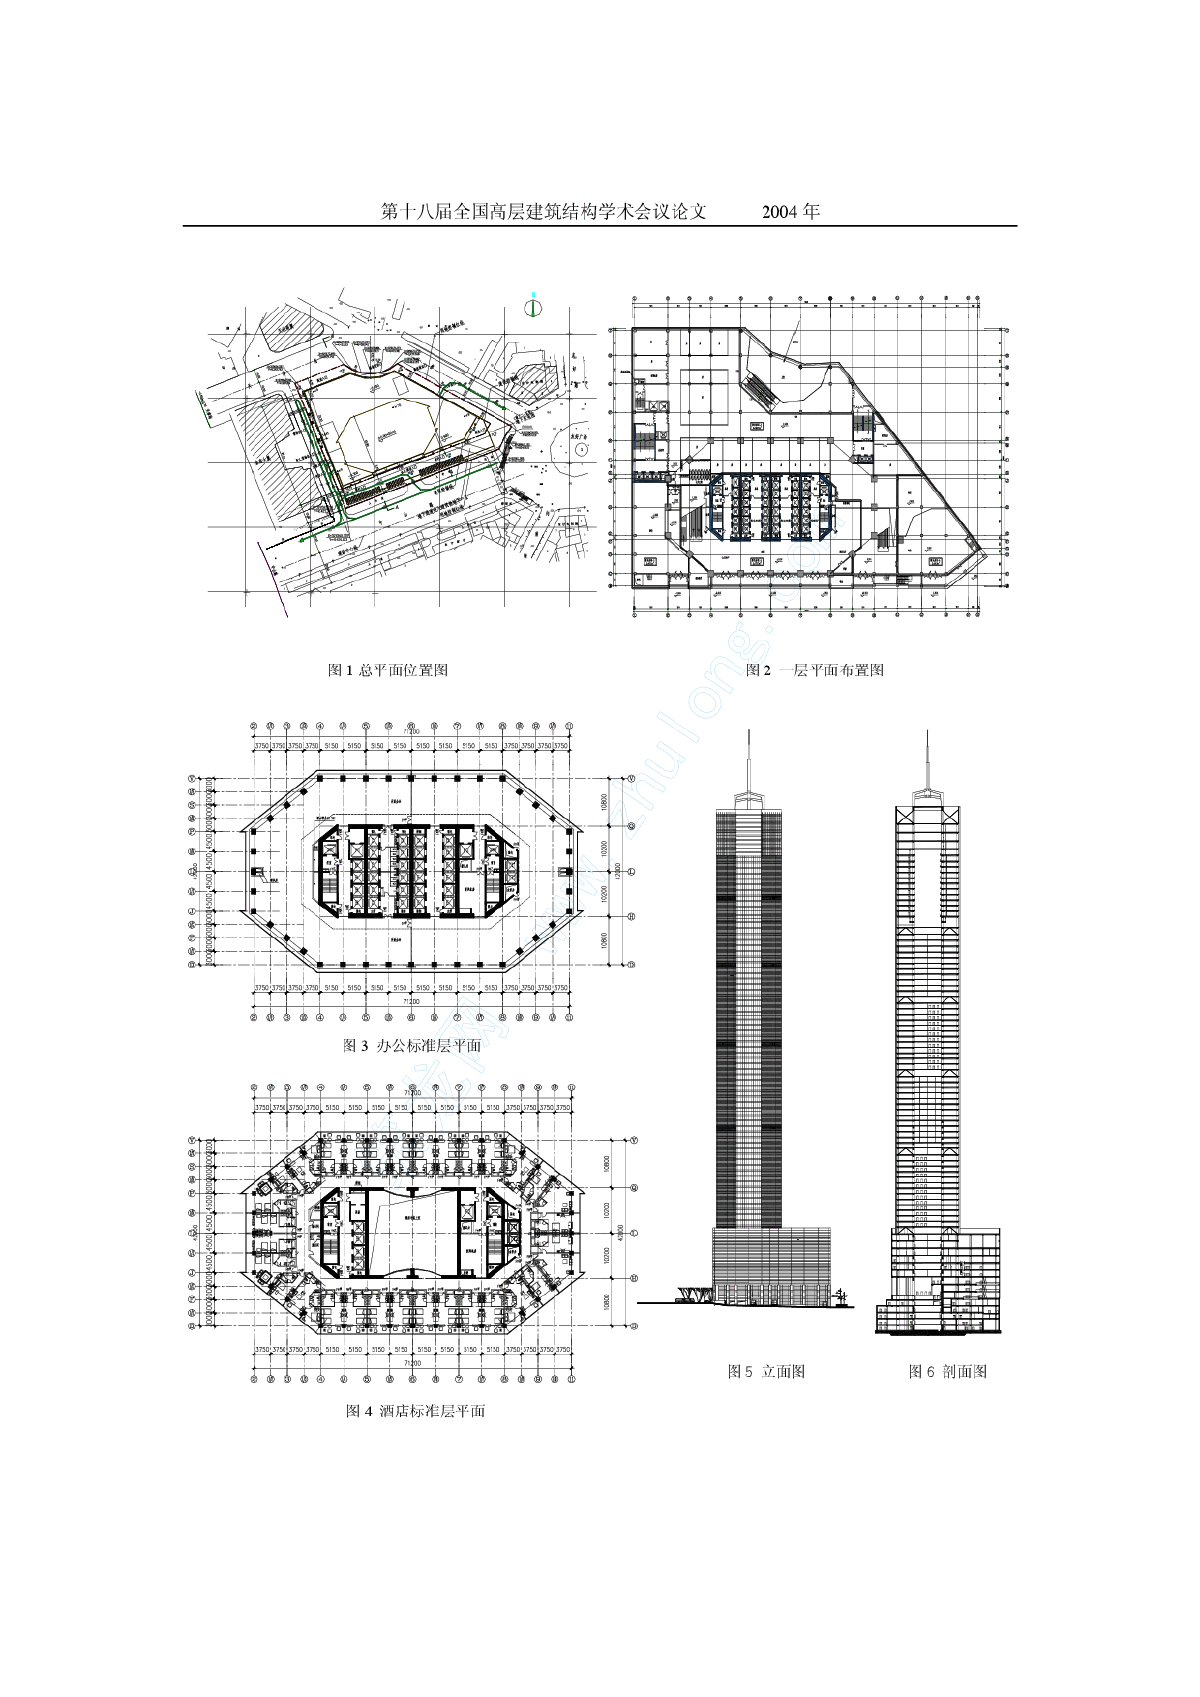 大连开发区最早的地标性建筑：金马大厦（24层写字楼） | Mapio.net